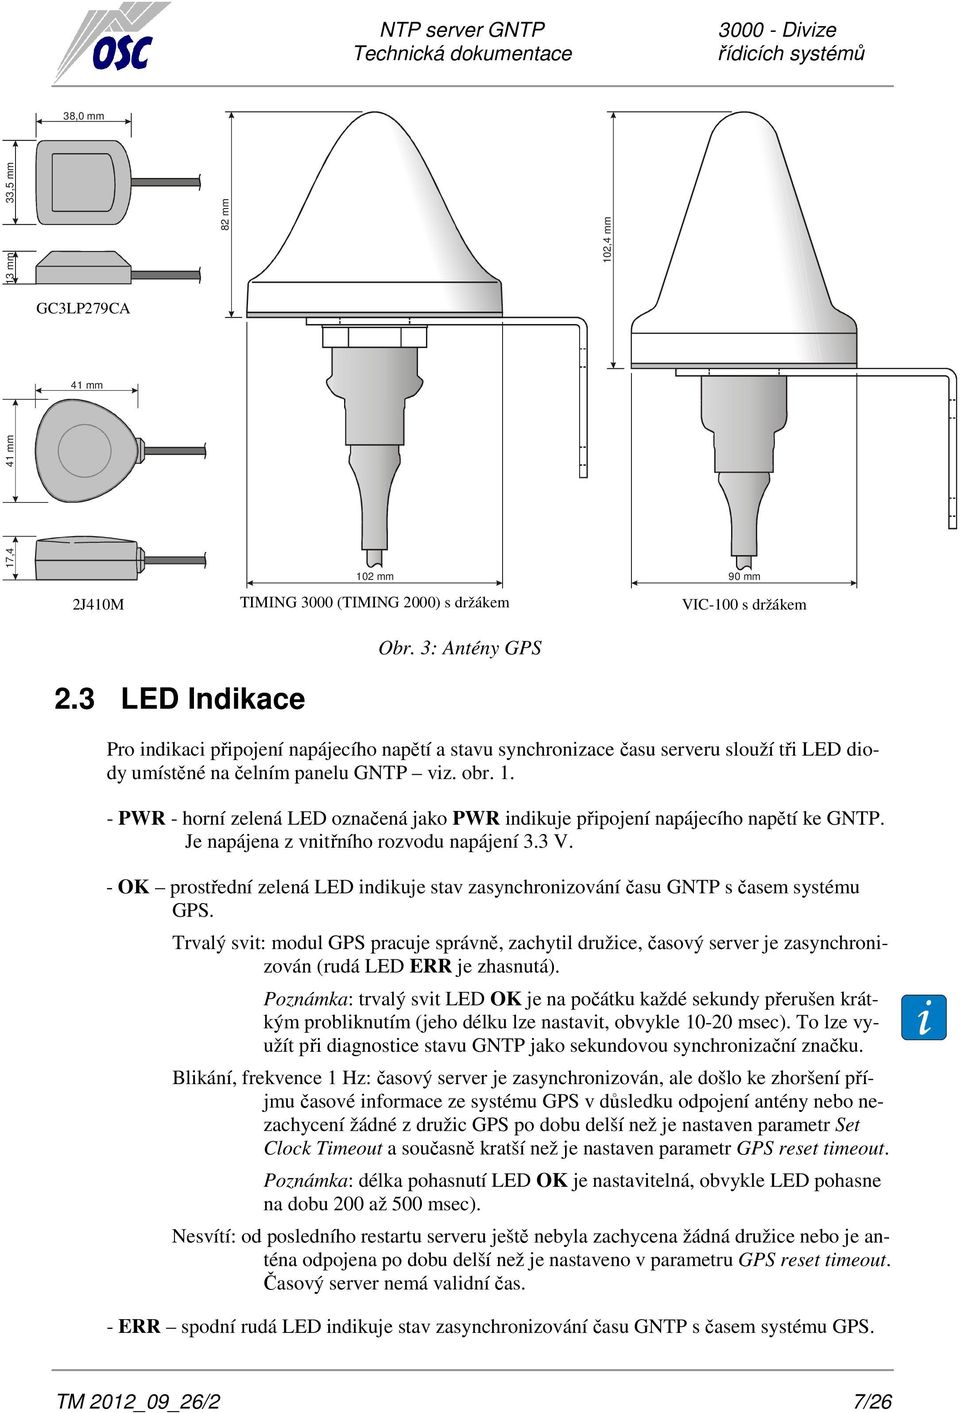 - PWR - horní zelená LED označená jako PWR indikuje připojení napájecího napětí ke GNTP. Je napájena z vnitřního rozvodu napájení 3.3 V.